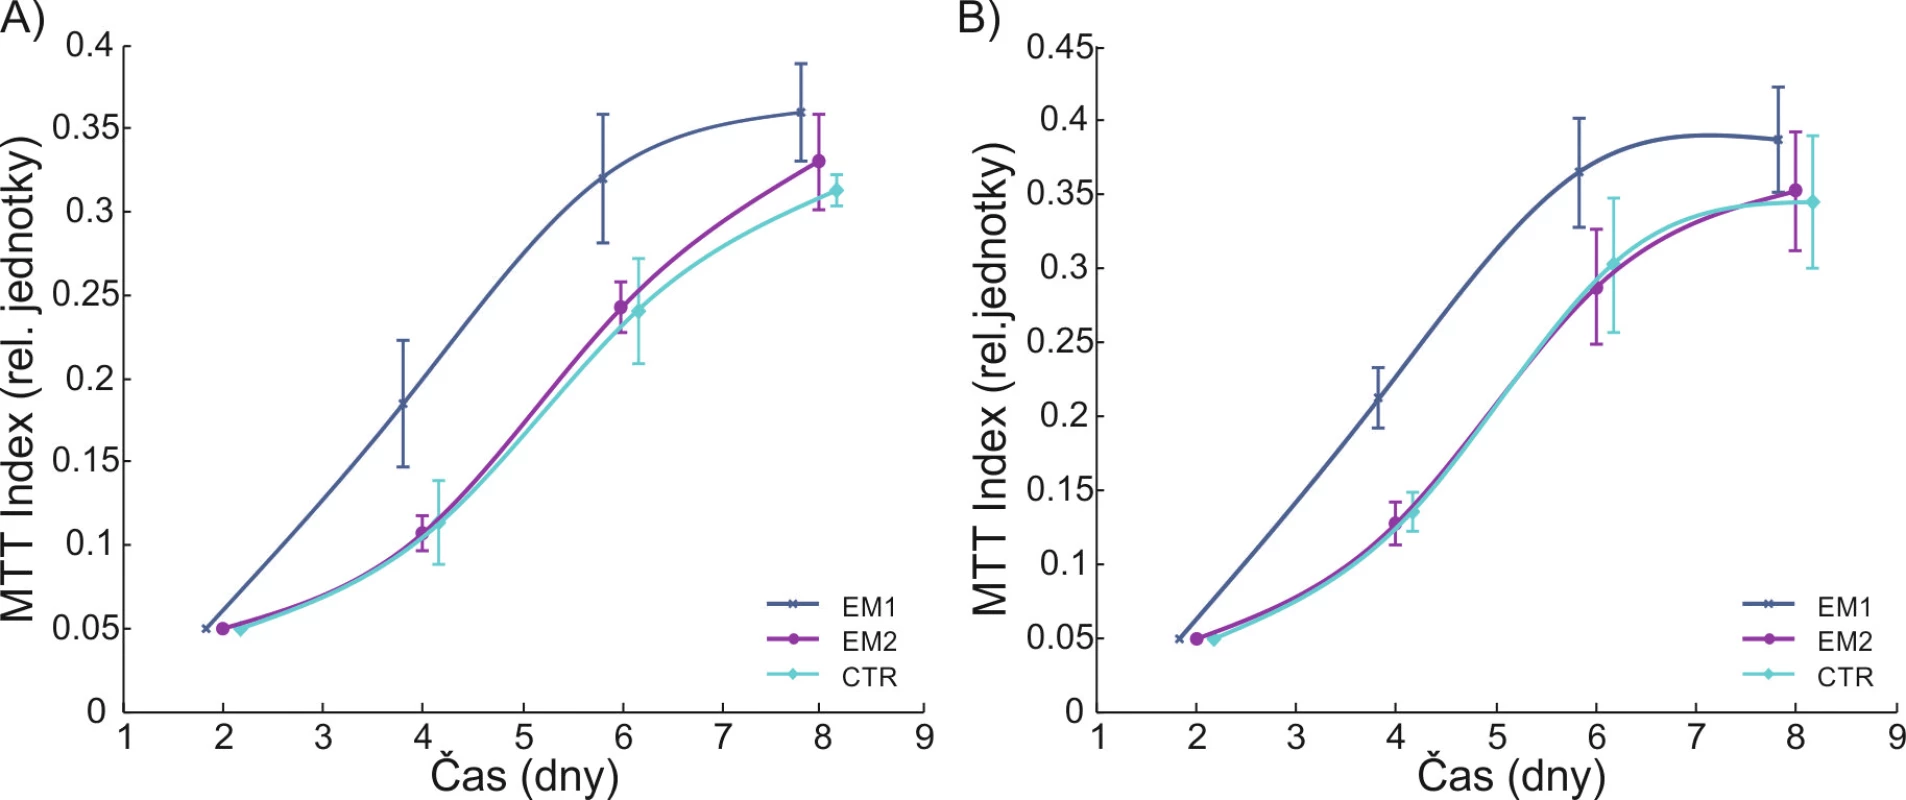 Metabolická aktivita lidských (A) a myších (B) endoteliálních buněk. Křivka s označením EM1 představuje vliv distanční elektroterapie produkující impulzní proudy 72 Hz, šíře 340 mikrosekund, křivka s označením EM2 představuje distanční elektroterapii produkující harmonické (sinusoidální) proudy s nosnou frekvencí 5 kHz, amplitudově modulované, a označení CTR je vyhrazeno pro kontrolní skupinu. Pouze impulzní indukované el. proudy signifikantně zvyšují metabolismus endoteliálních buněk. Převzato z práce (12).